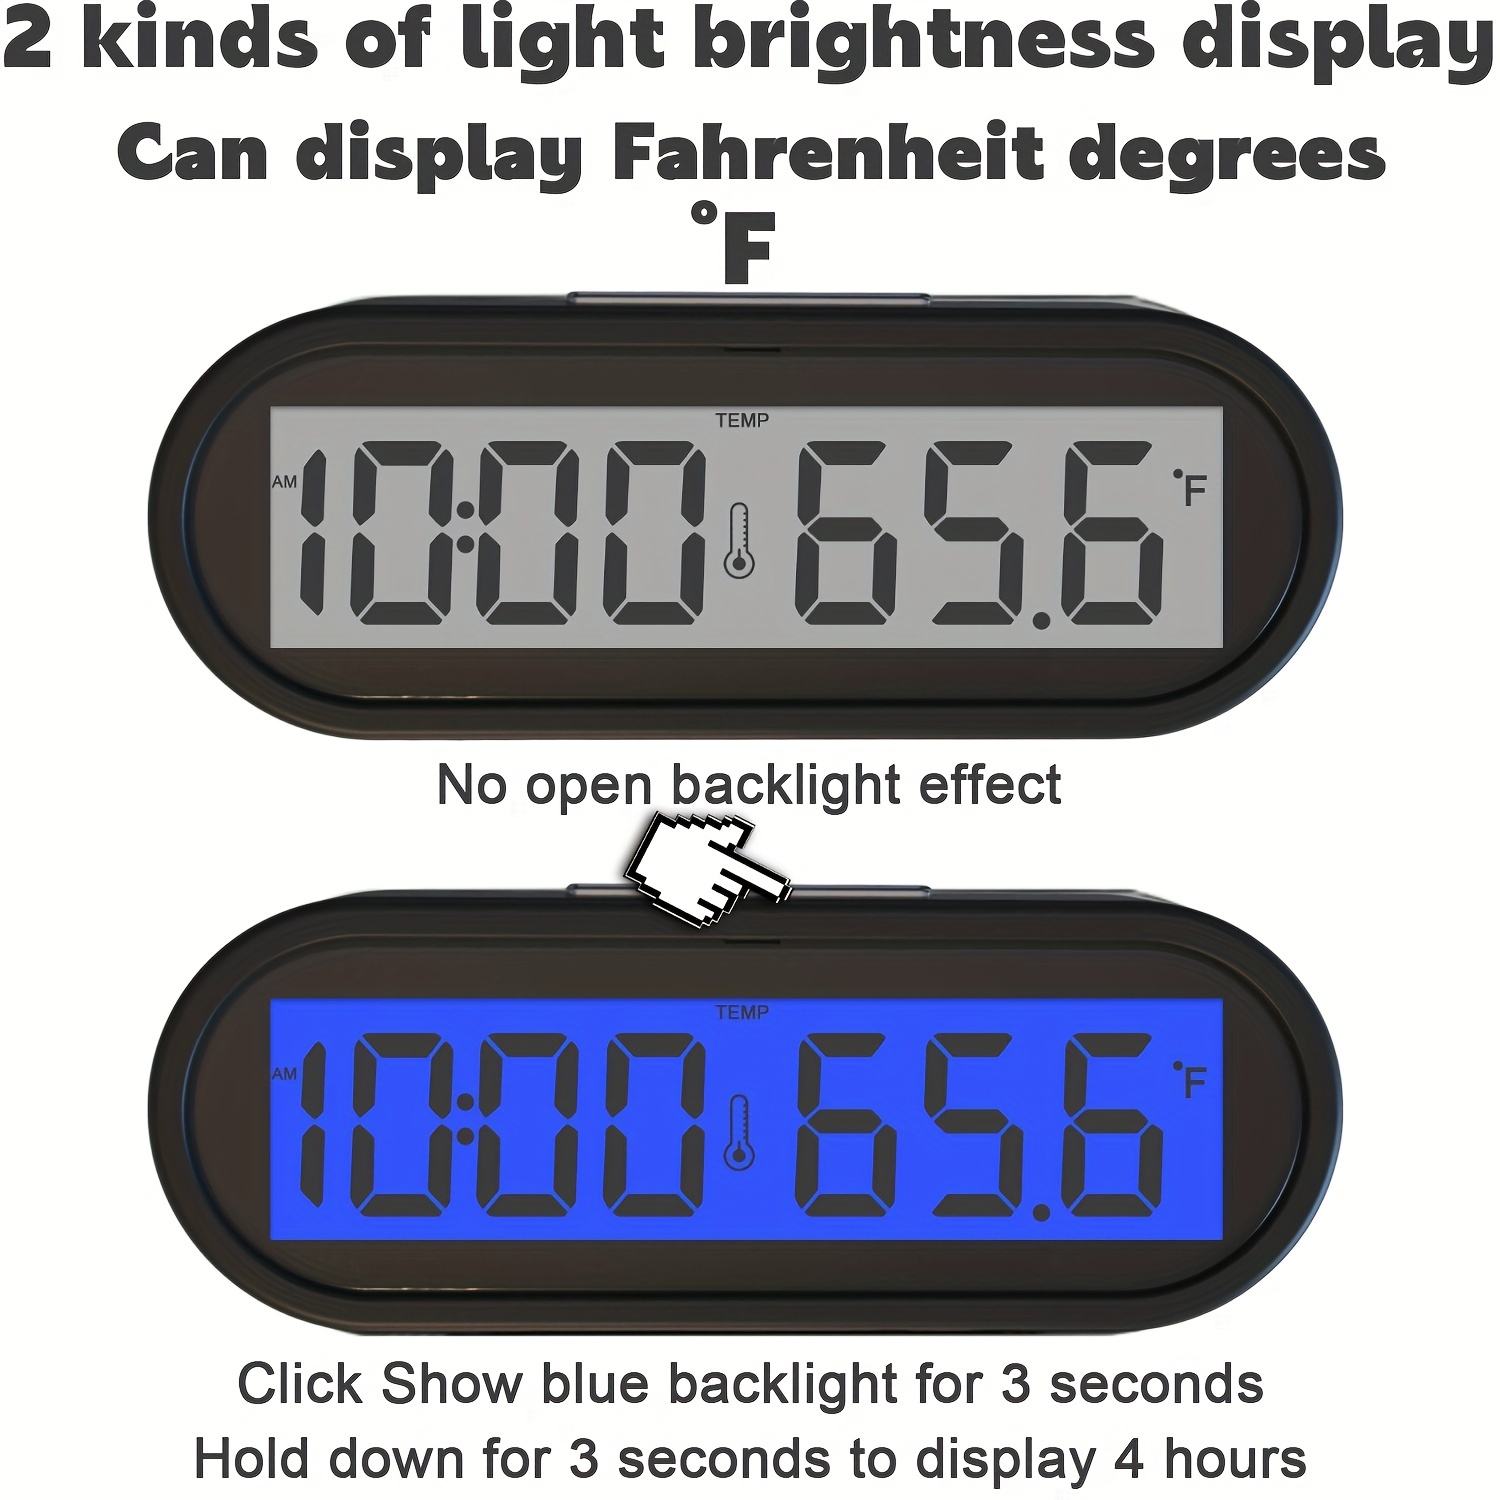 Horloge de Voiture, Horloge numérique de Voiture avec thermomètre Horloge  de Tableau de Bord de véhicule Mini (Car Digital Clock Thermometer